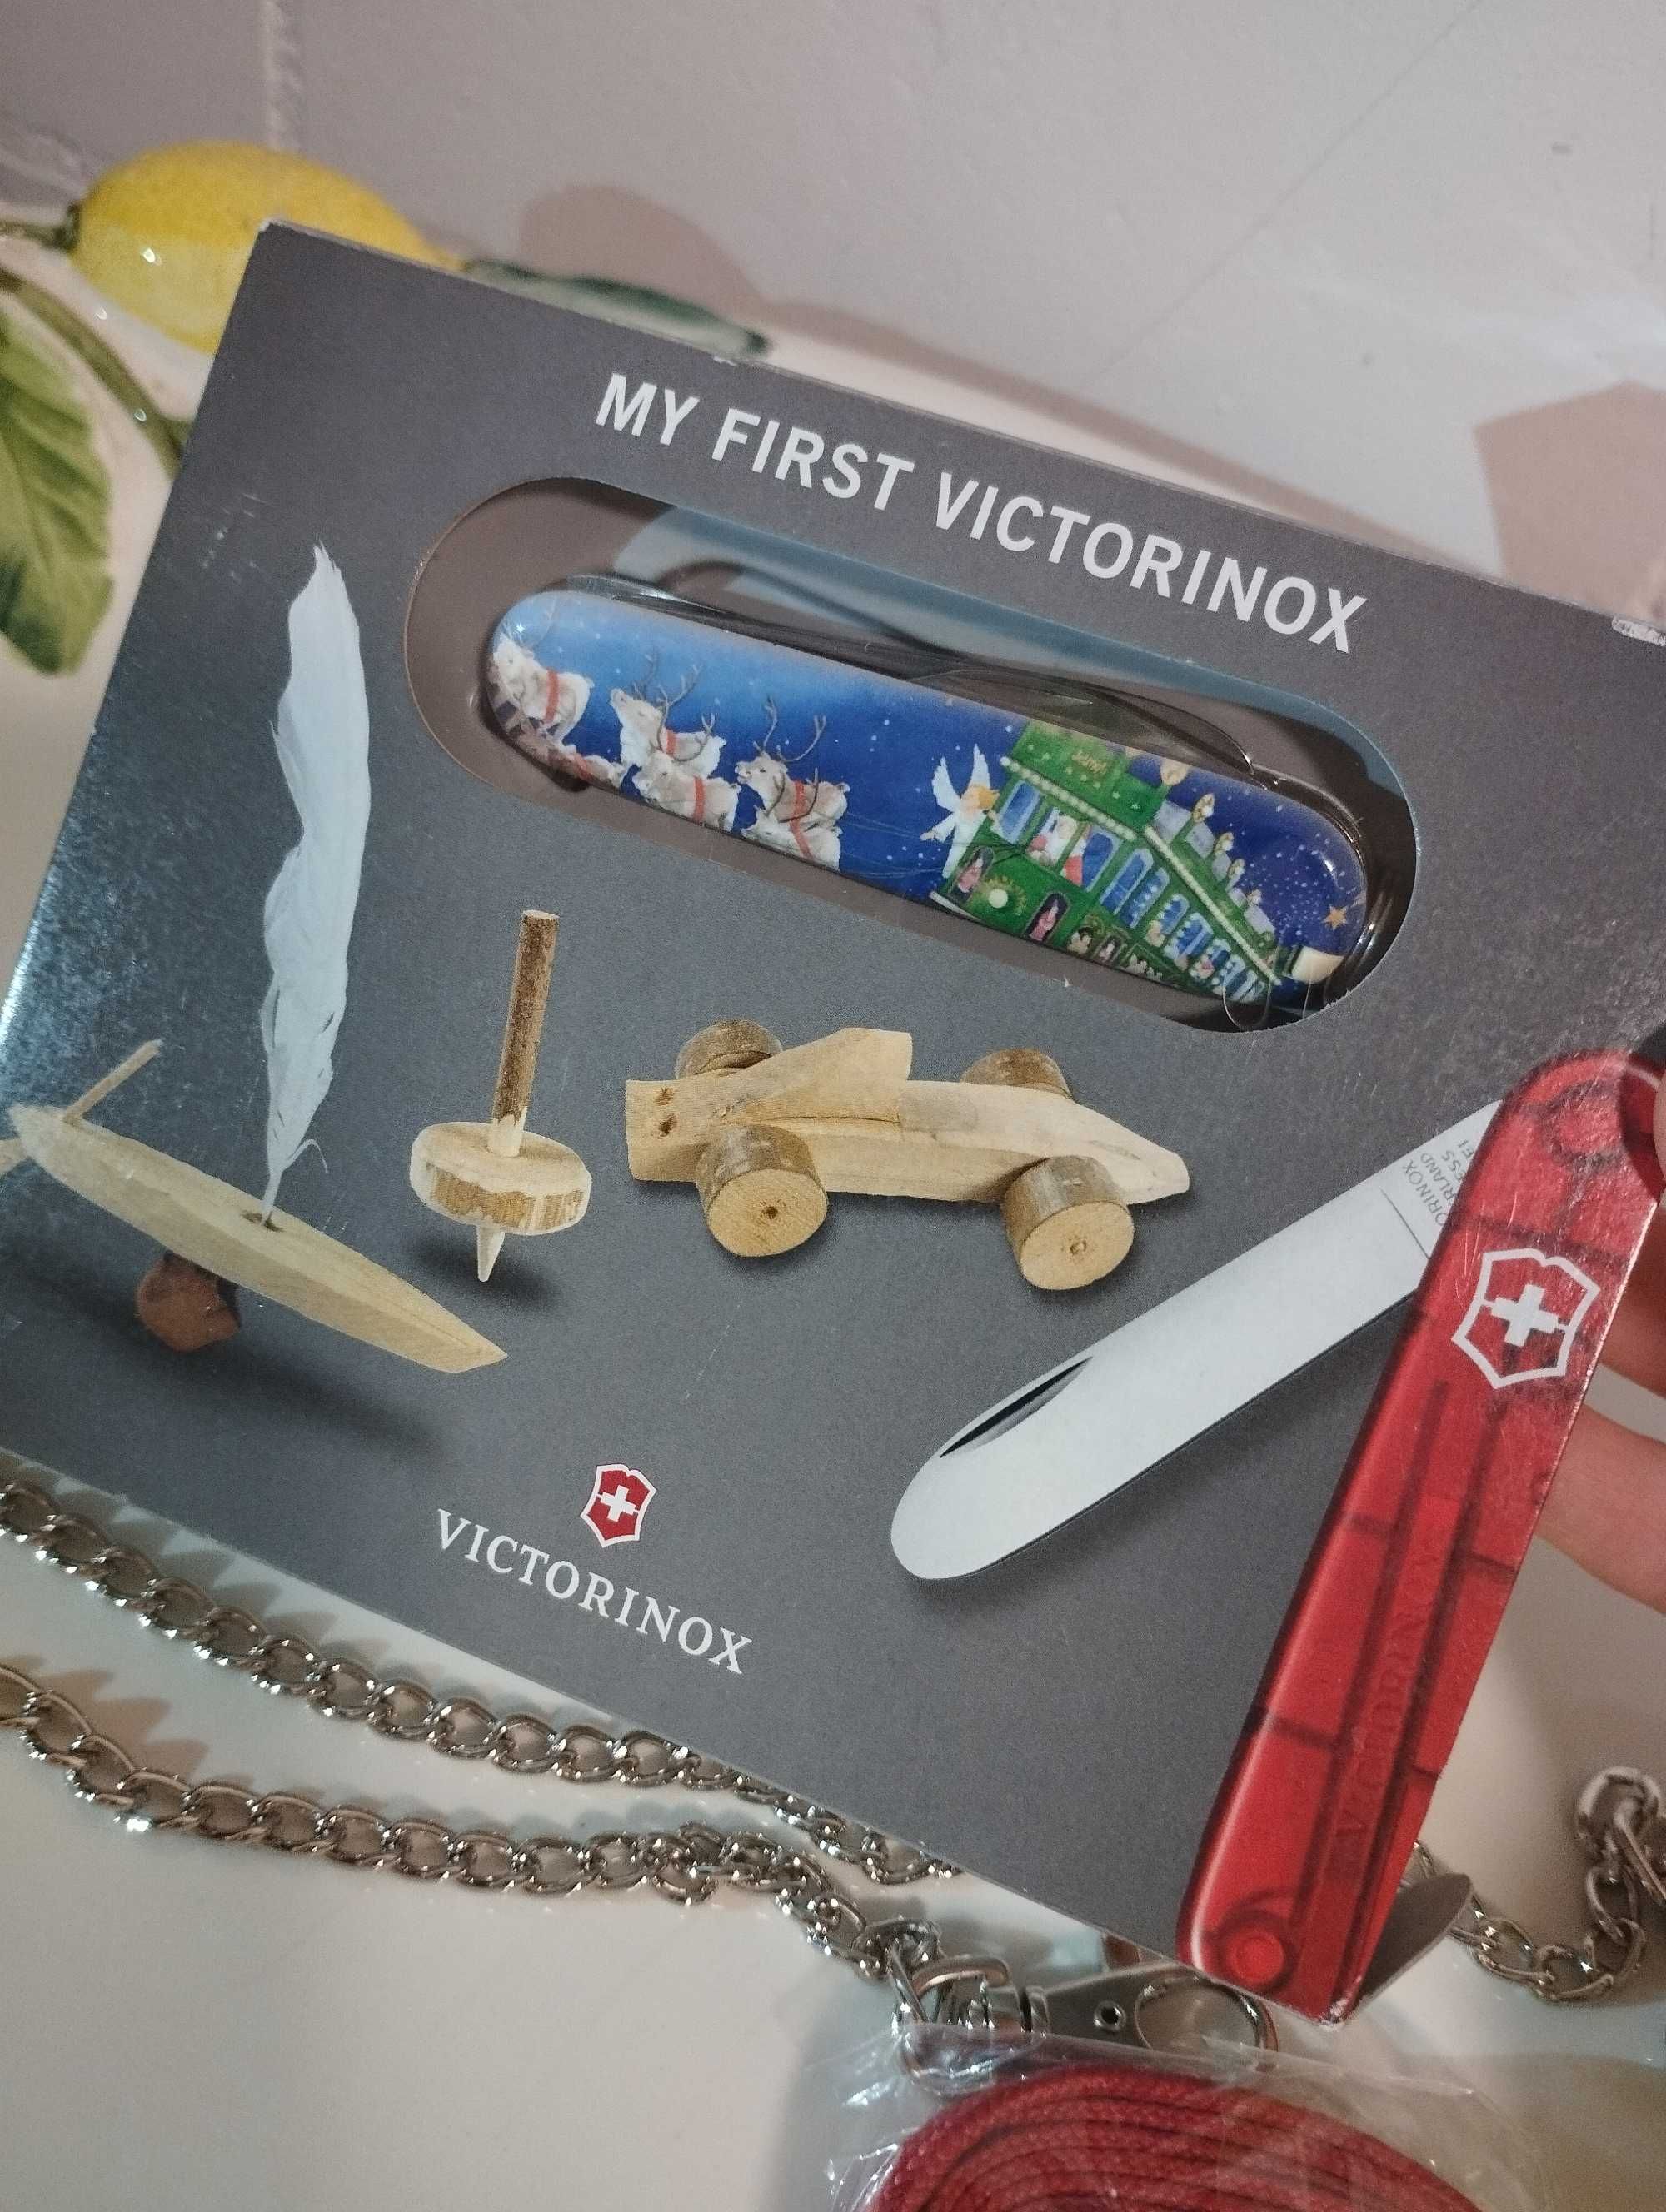 Victorinox нож на подарок в коллекцию лимитированный выпуск Оригинал